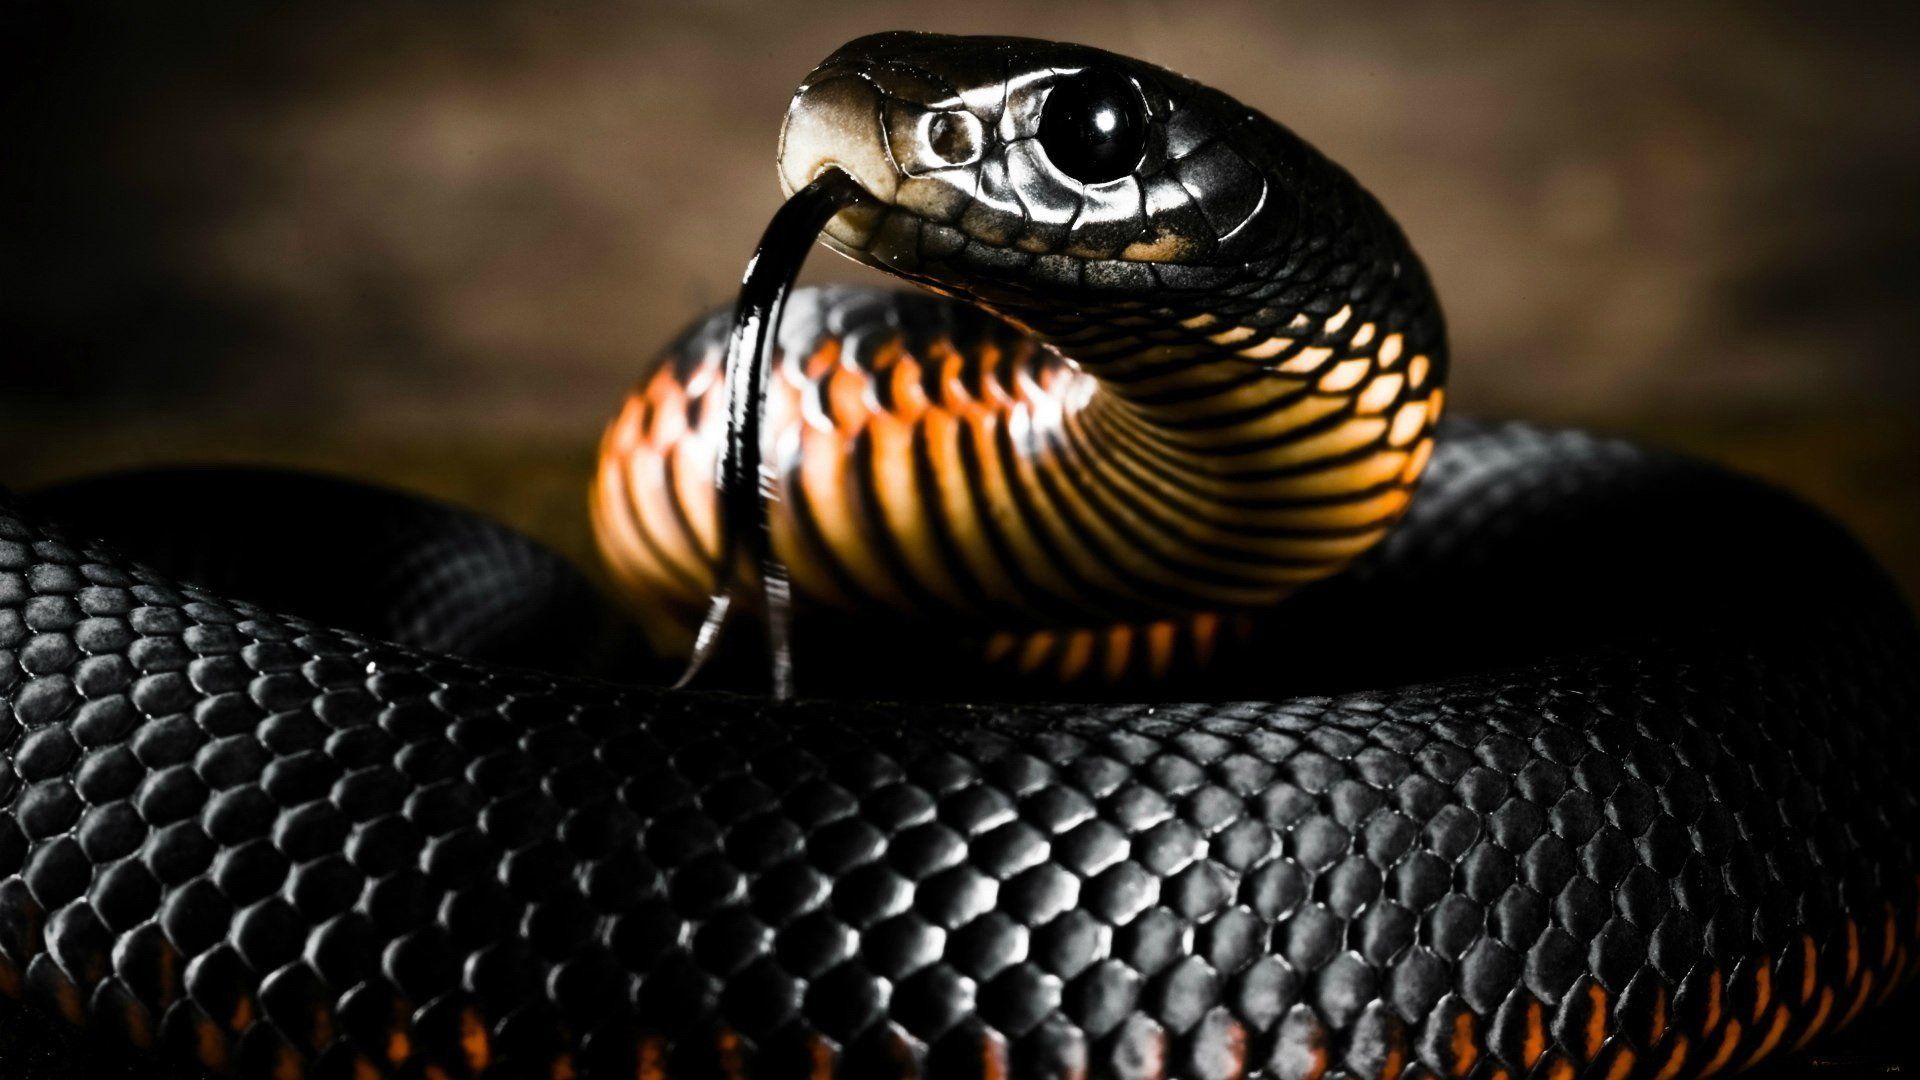 Indian King Cobra Snake Wallpaper 50 images